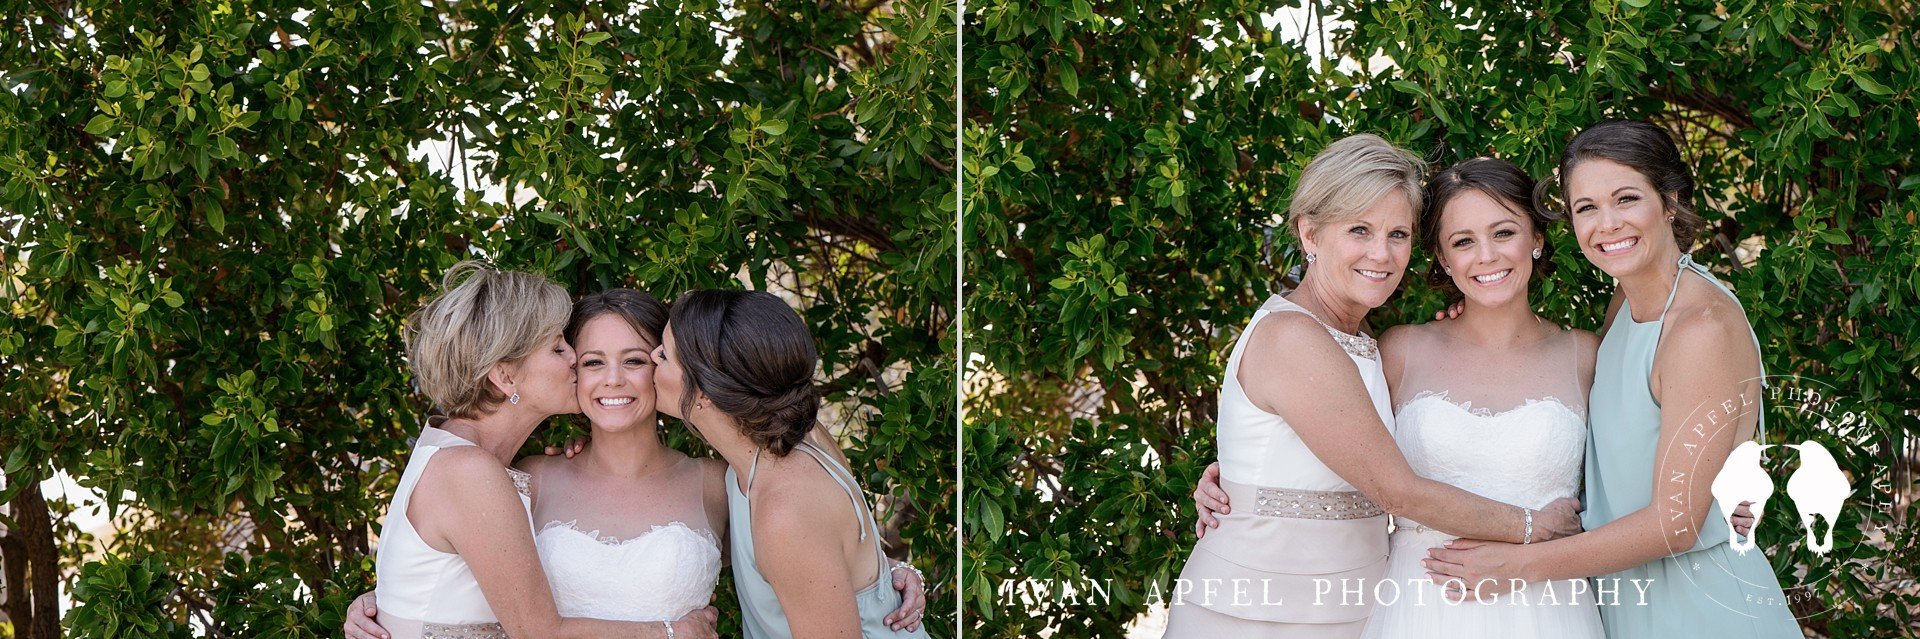 Drop Anchor Resort Islamorada Wedding Florida Keys Ivan Apfel Photography Kaitlin and Ben_0205.jpg